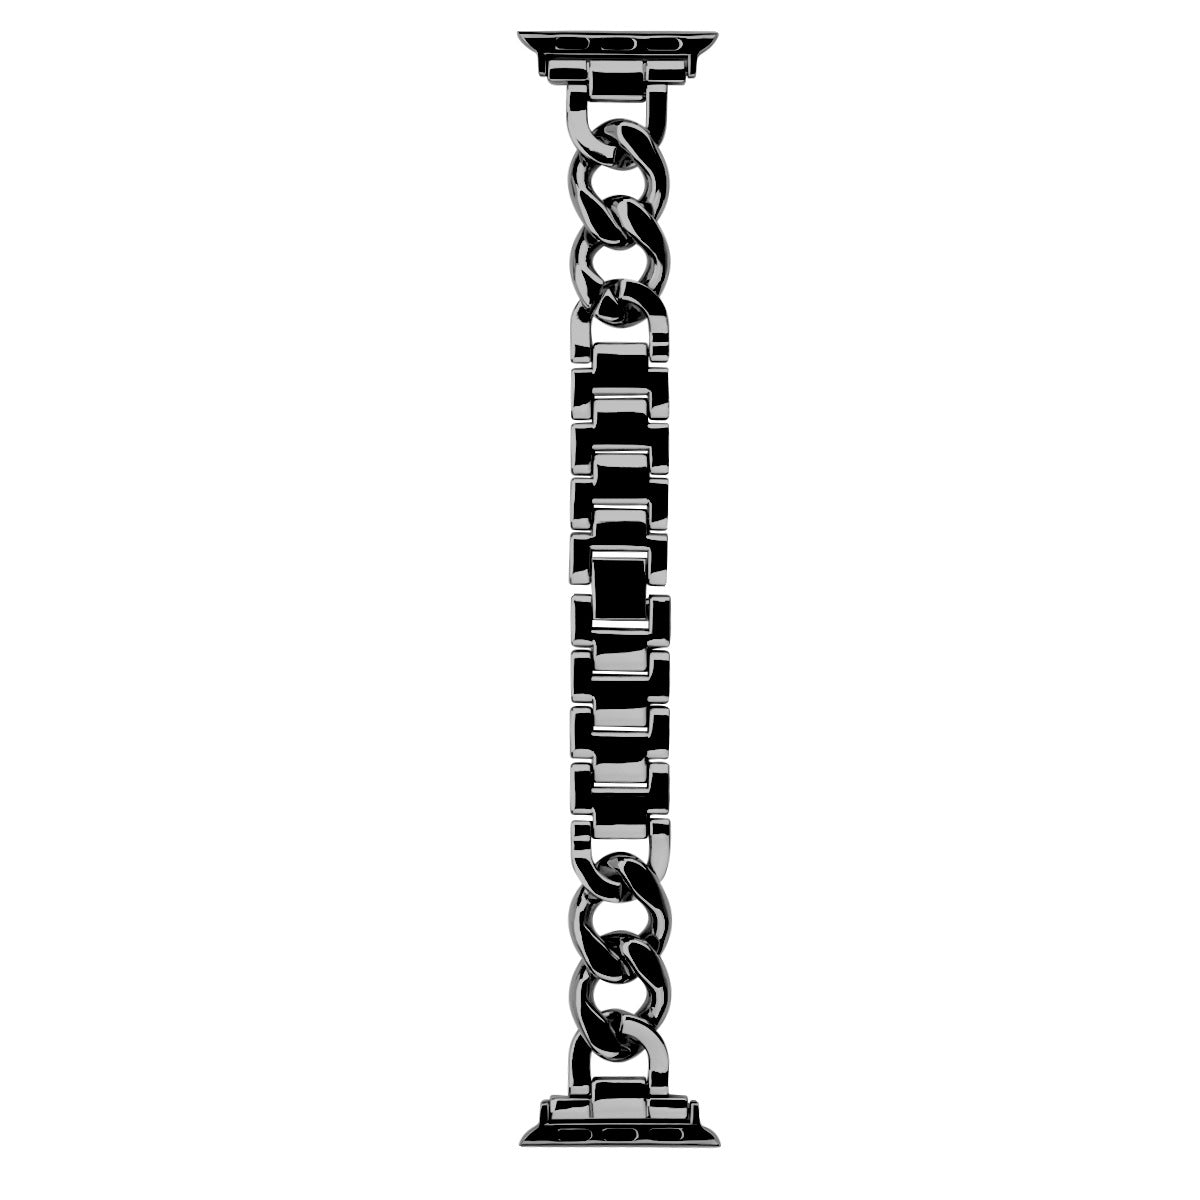 Single row denim metal chain strap Iwatch W24XAW82205BK